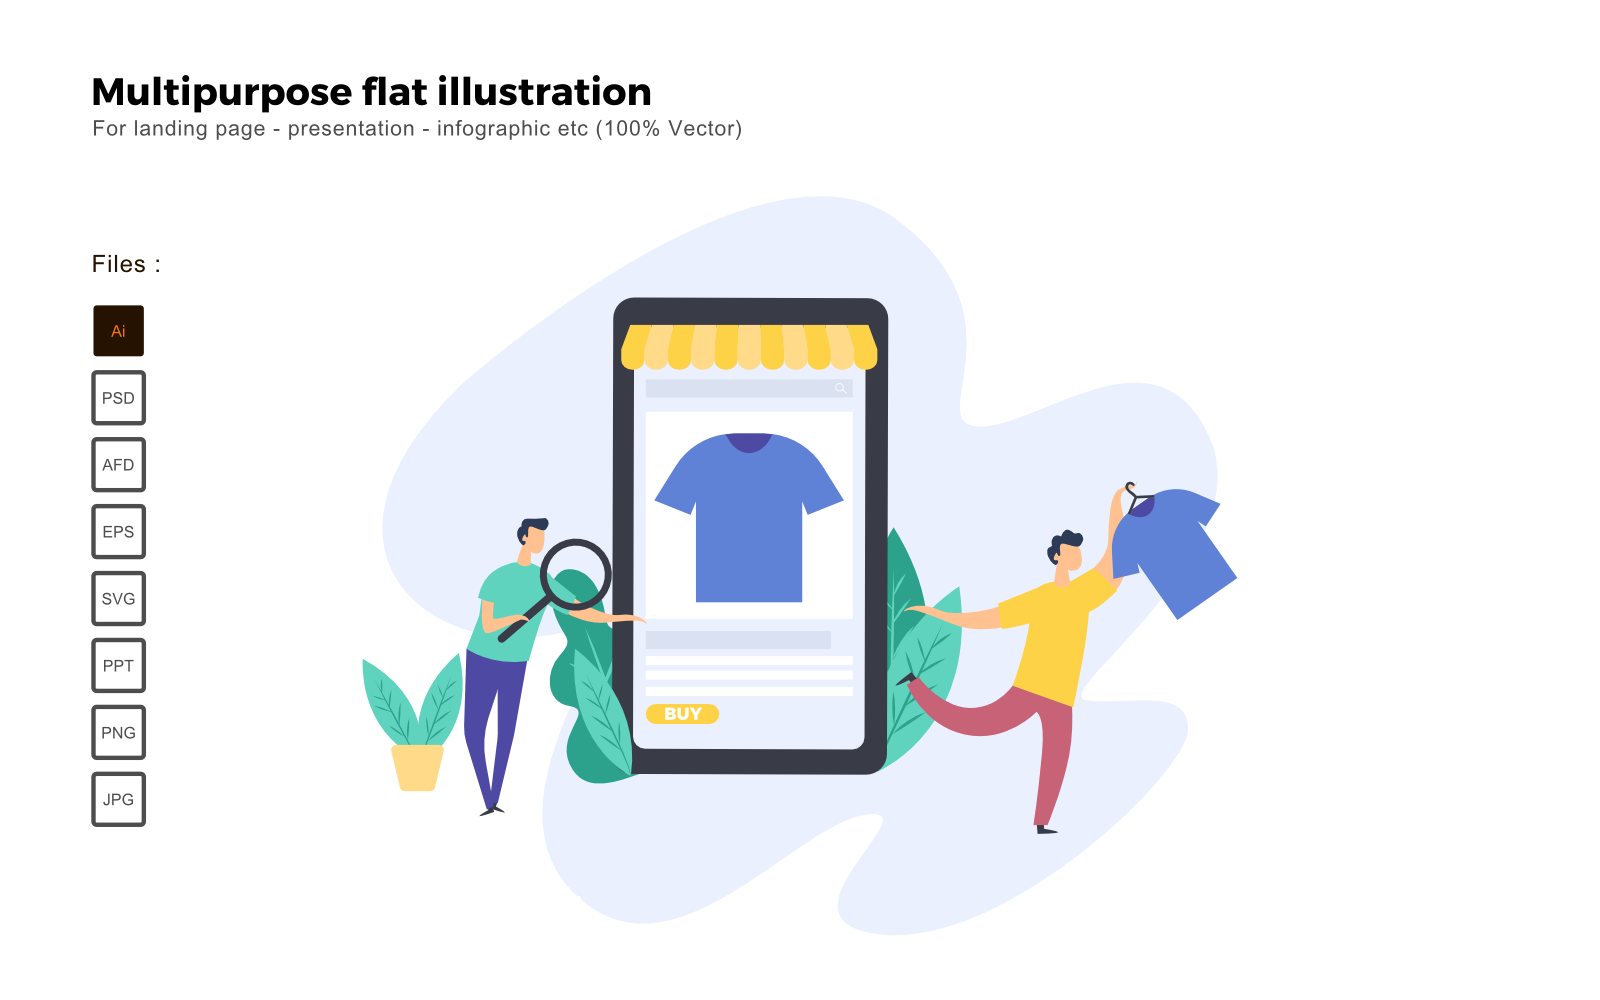 Multipurpose Flat Illustration Online Shopping Apps - Vector Image